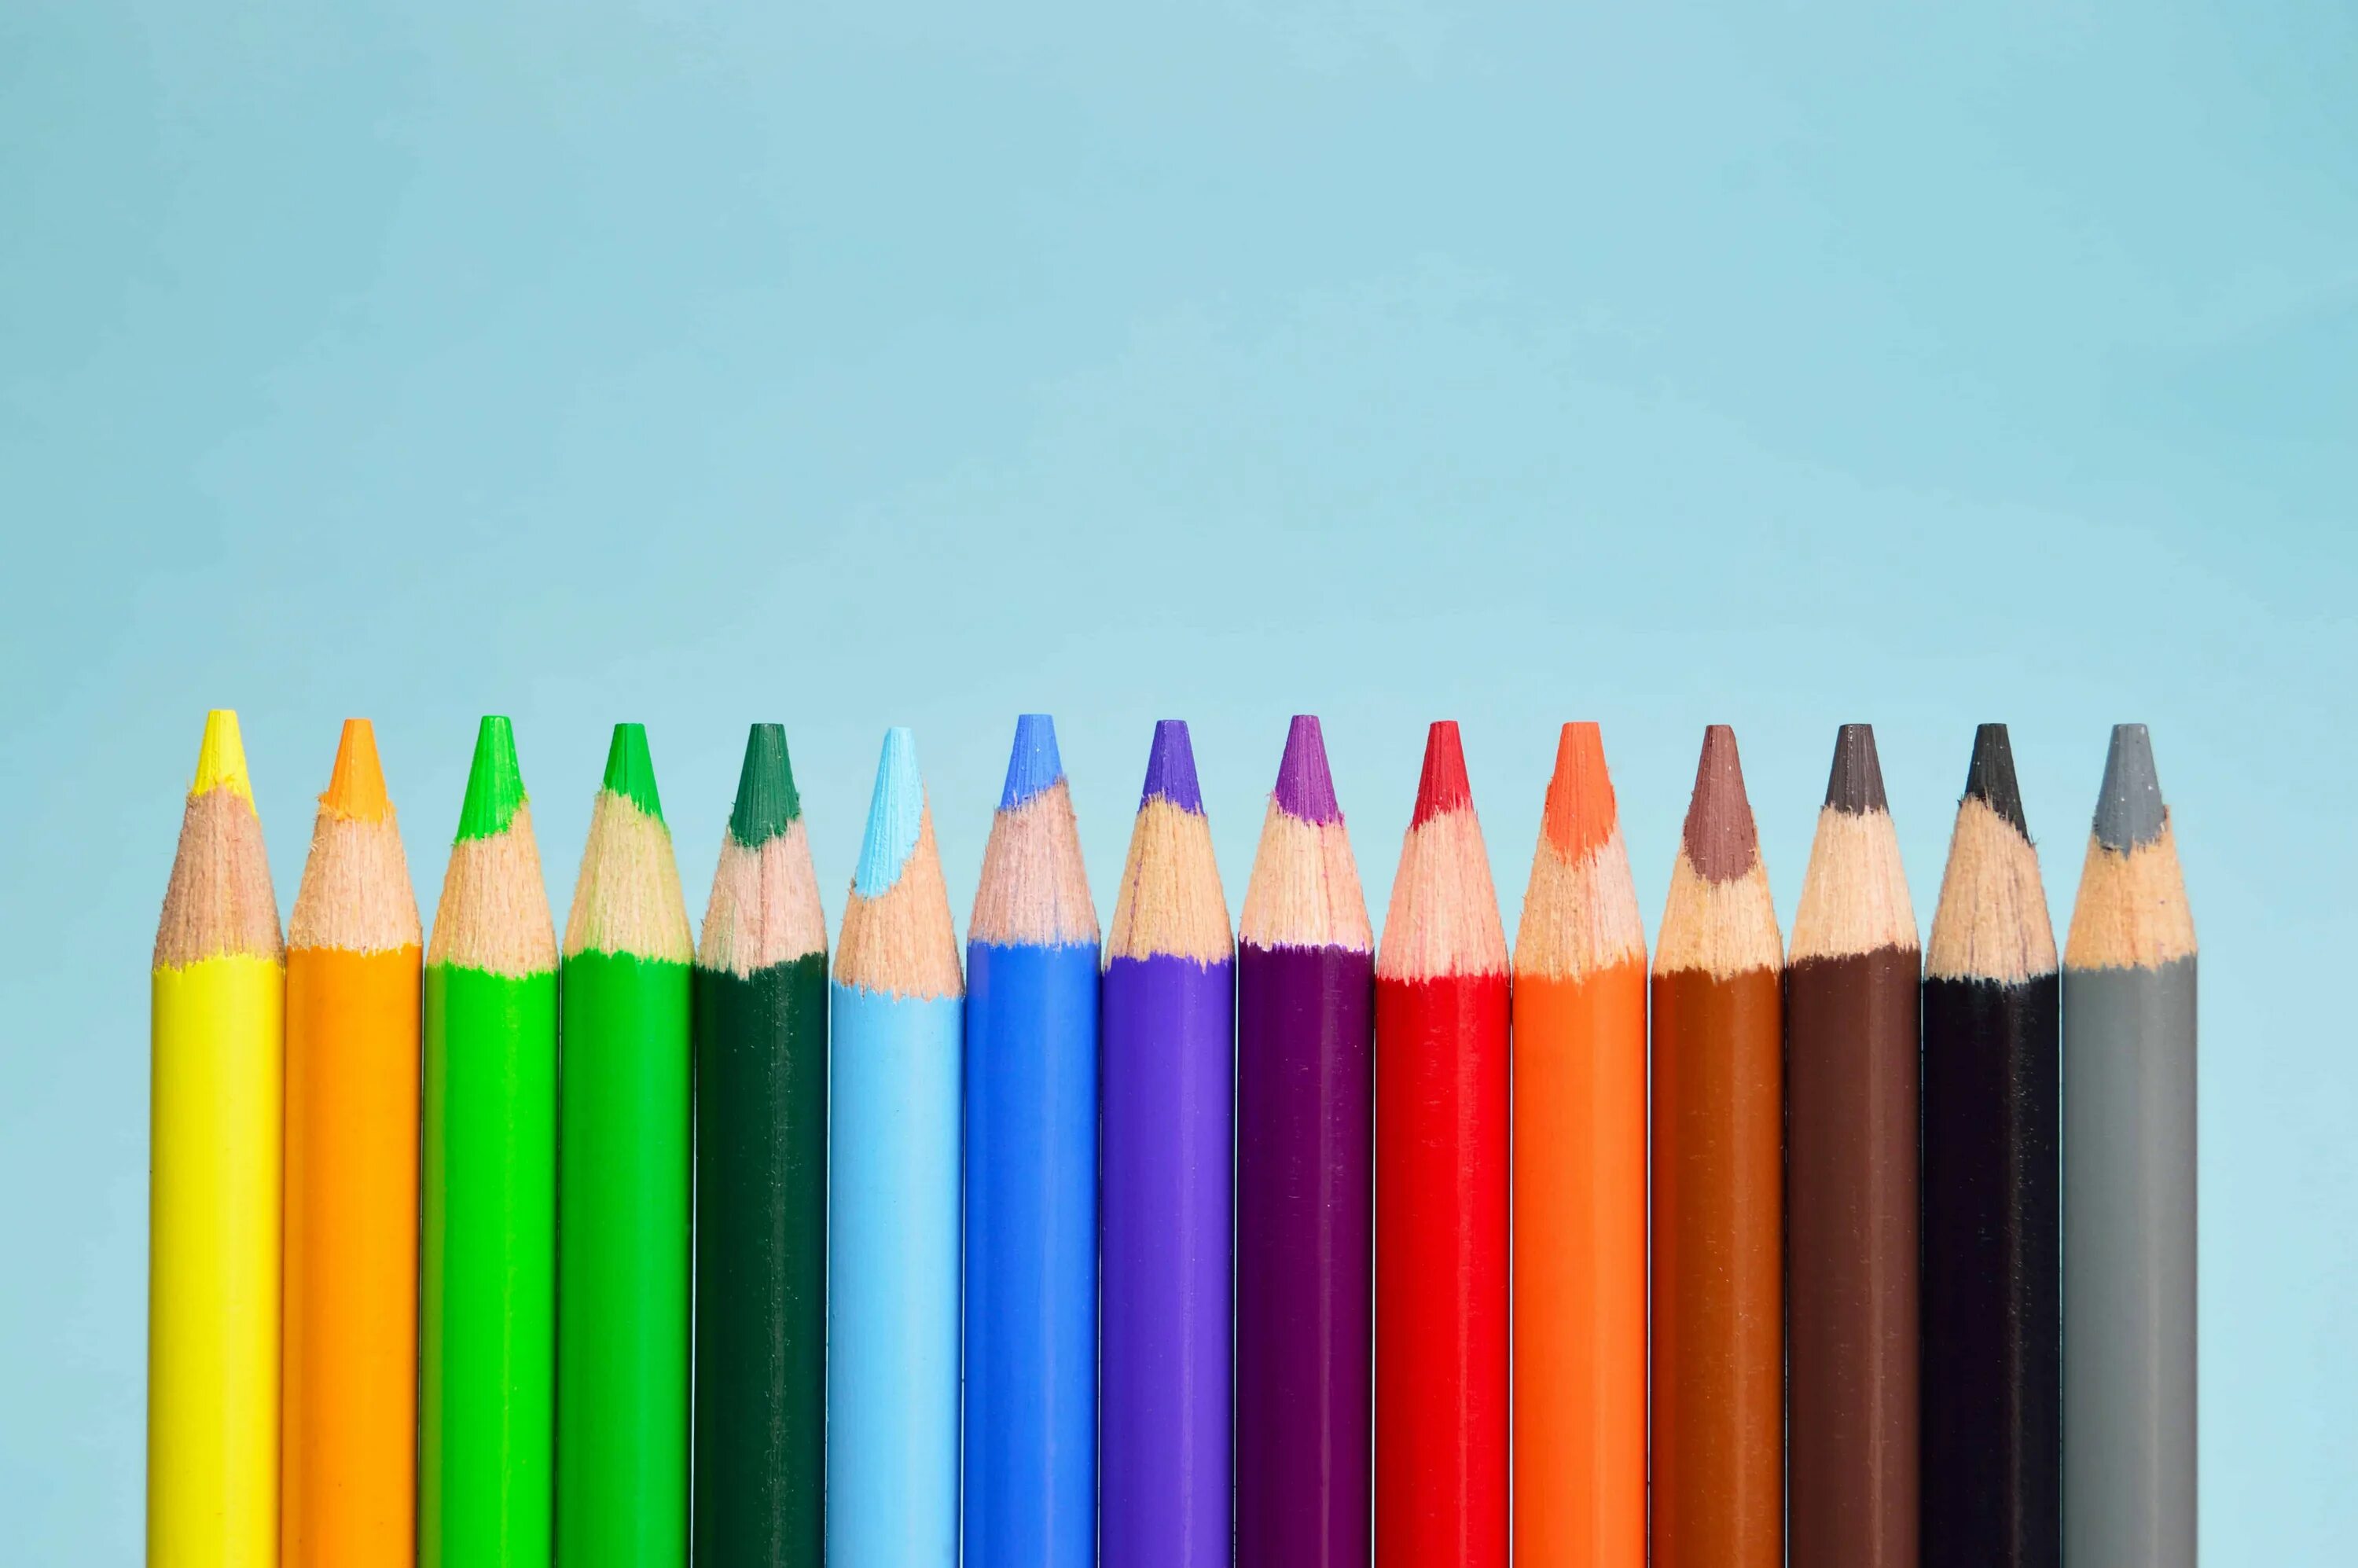 Названия цветов карандашей. Карандаши колор пенсил. Карандаши цветные. Рисование цветными карандашами. Фон карандашом.